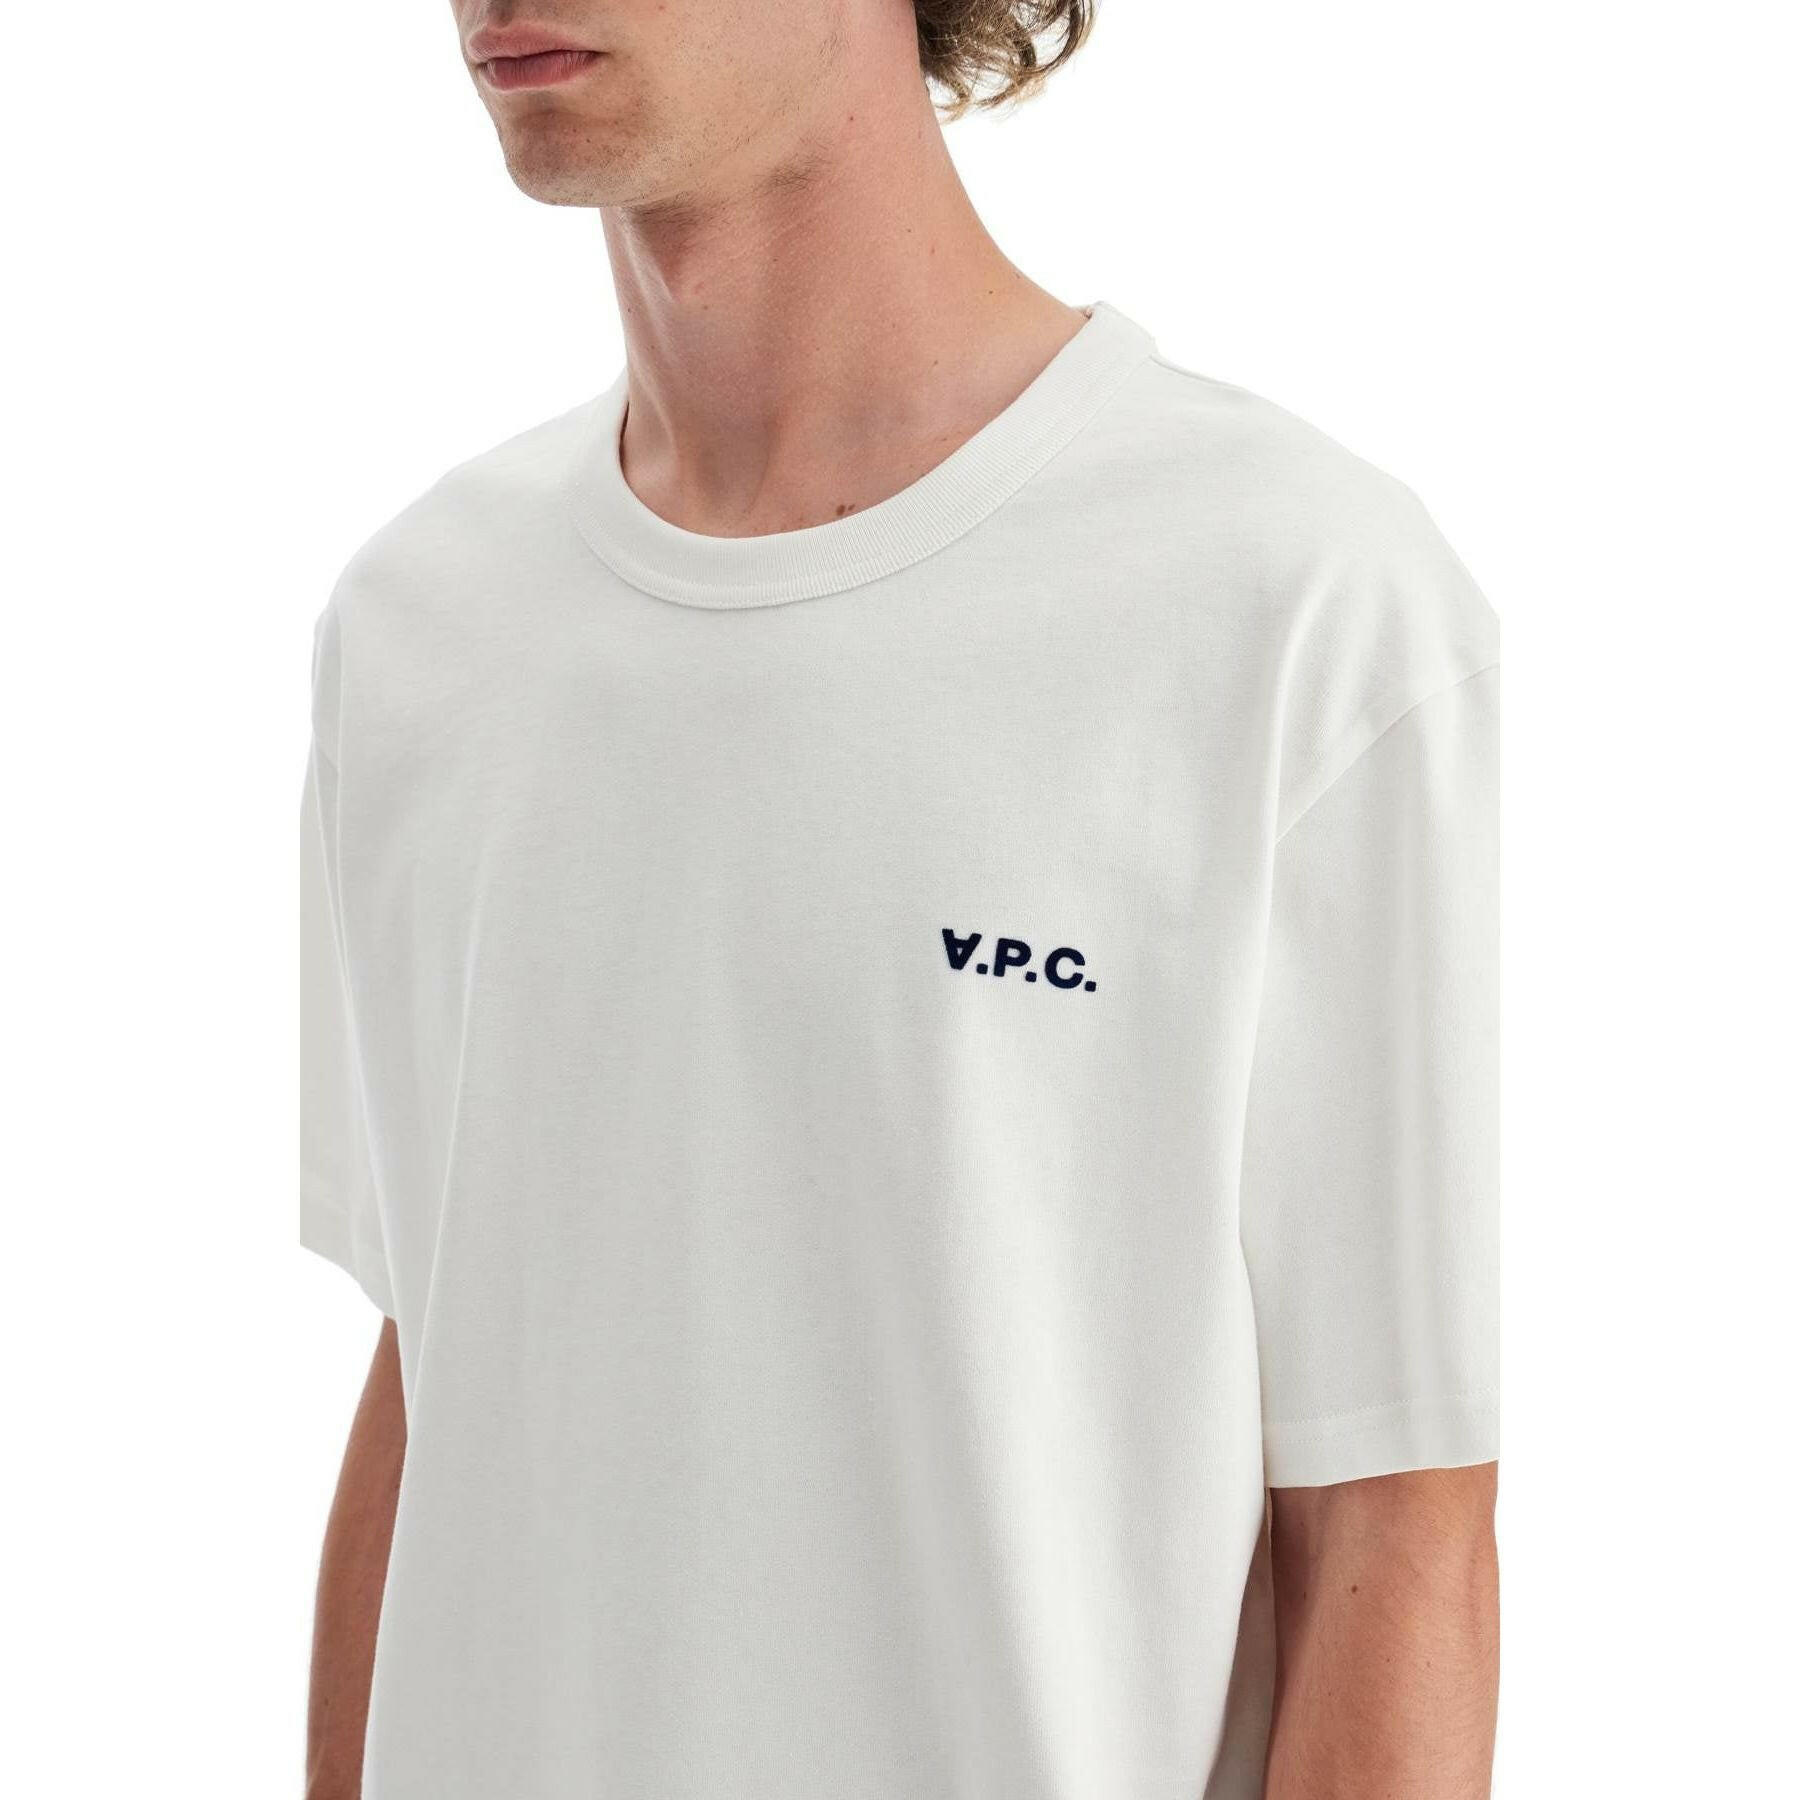 Boxy Petit VPC Organic Cotton T-Shirt.